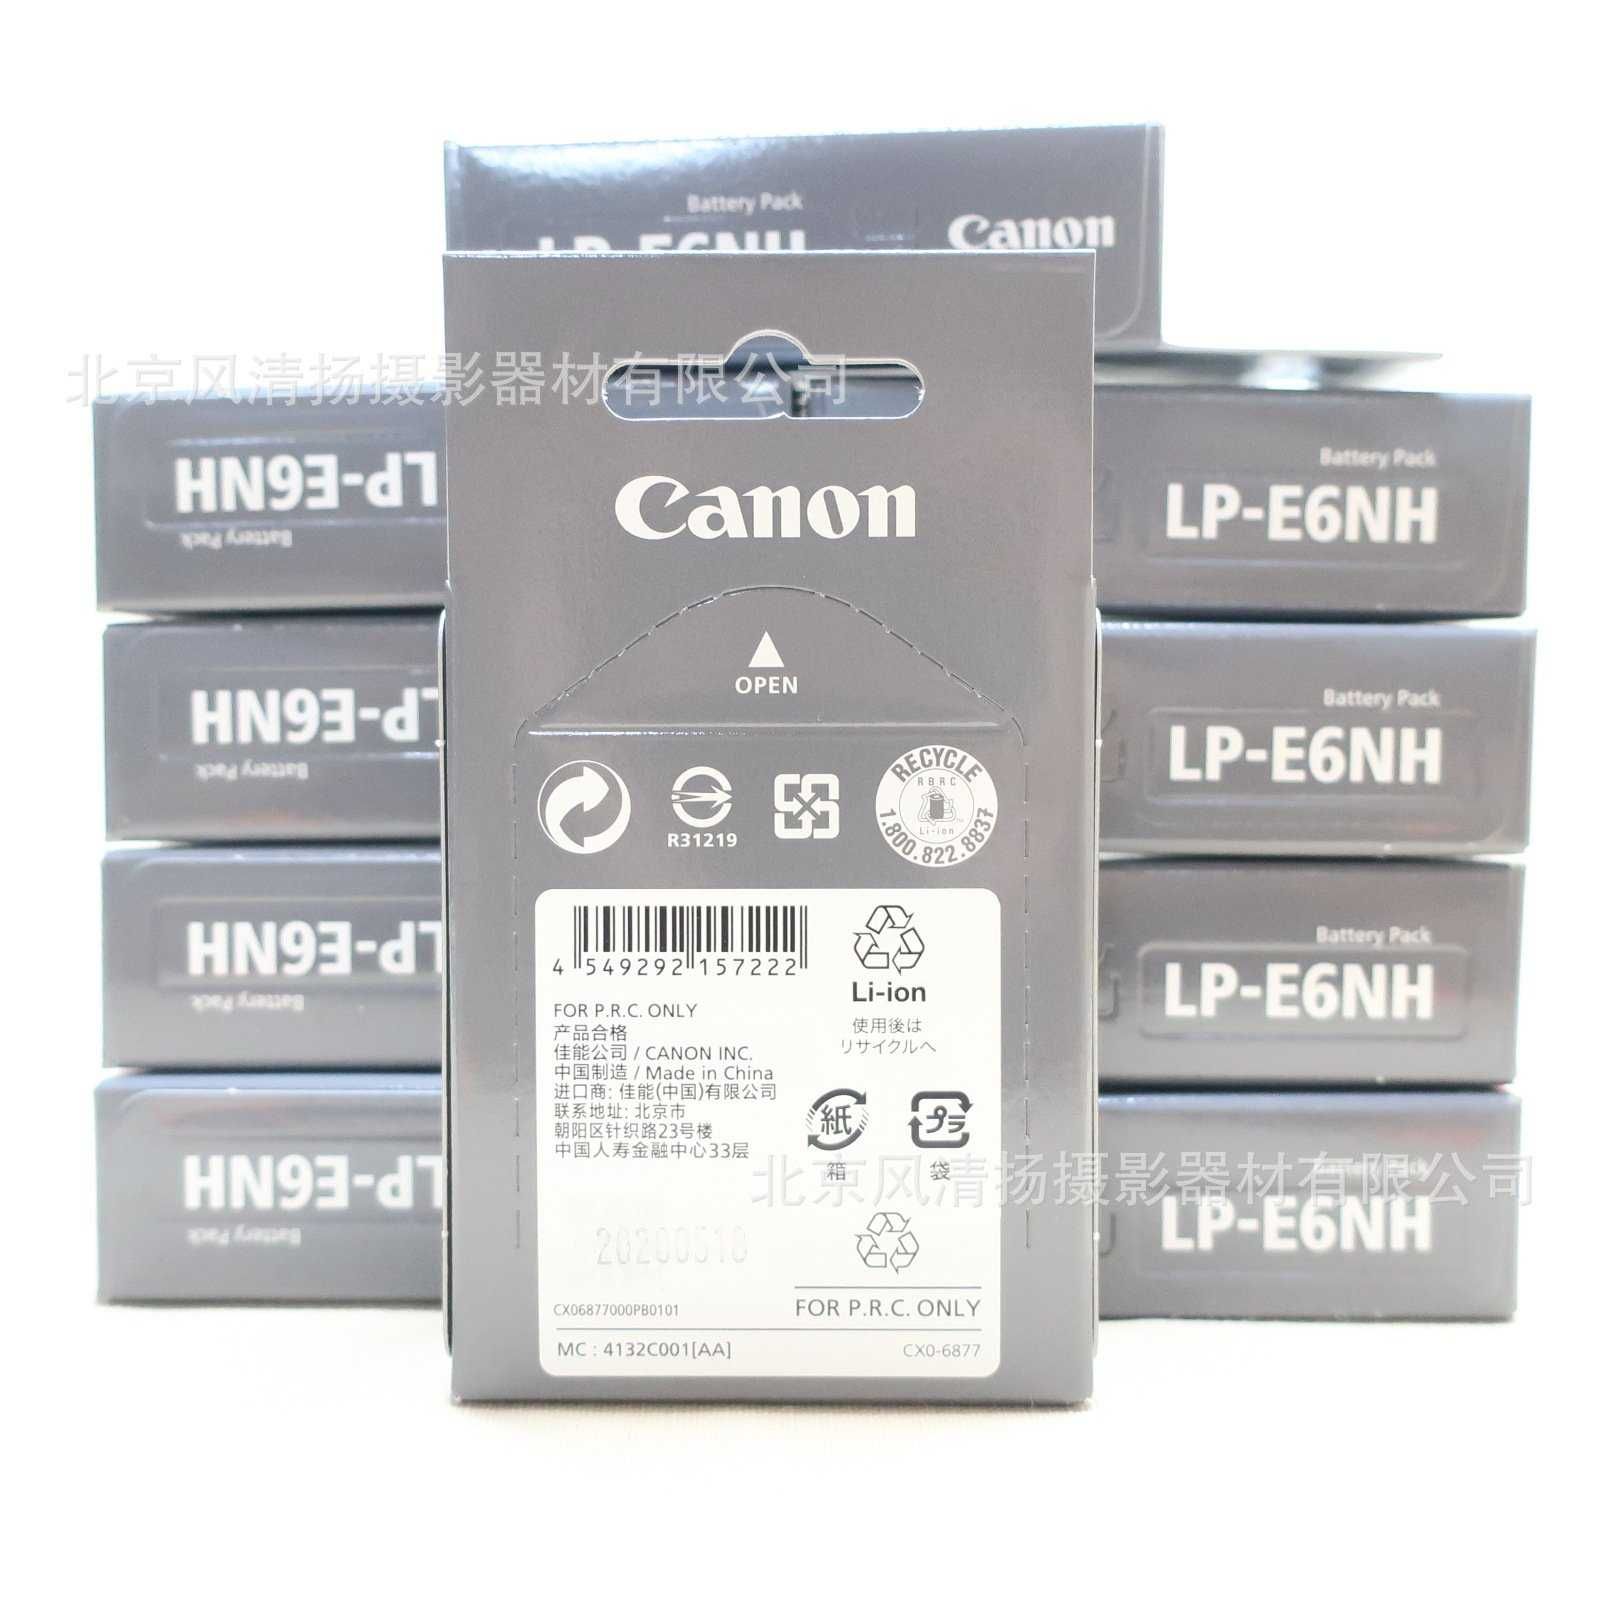 Аккумуляторы для цифровых фотокамер Canon с доставкой